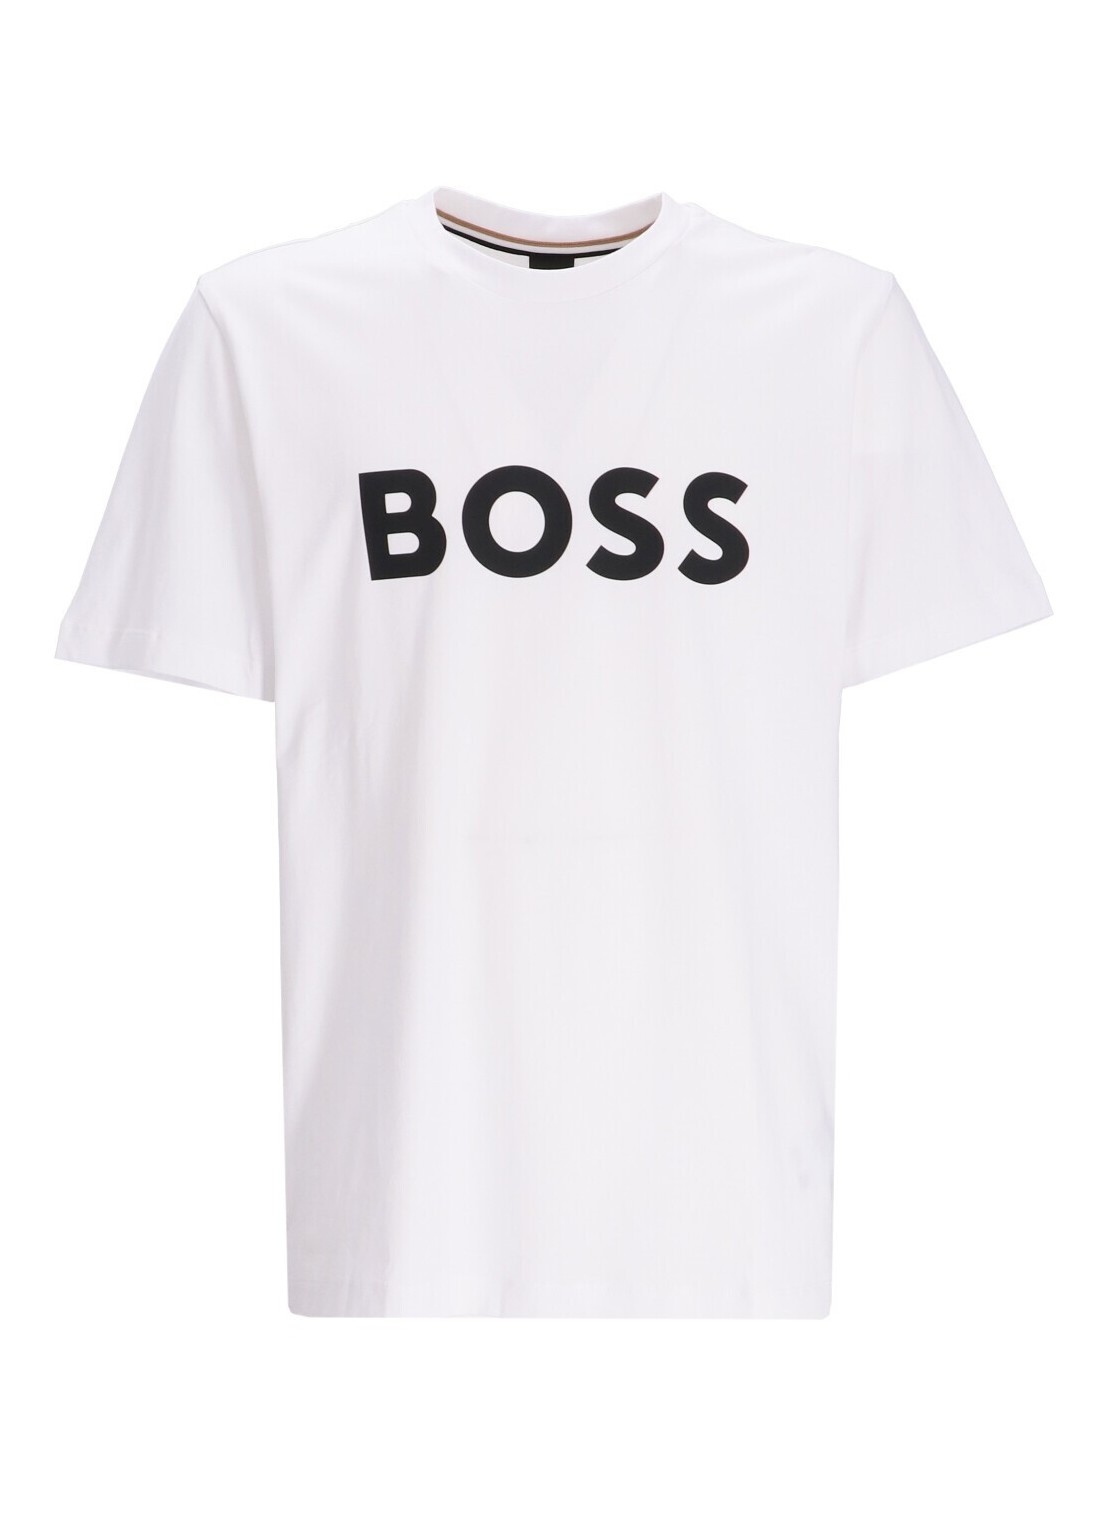 Camiseta boss t-shirt man tiburt 354 50495742 100 talla XL
 